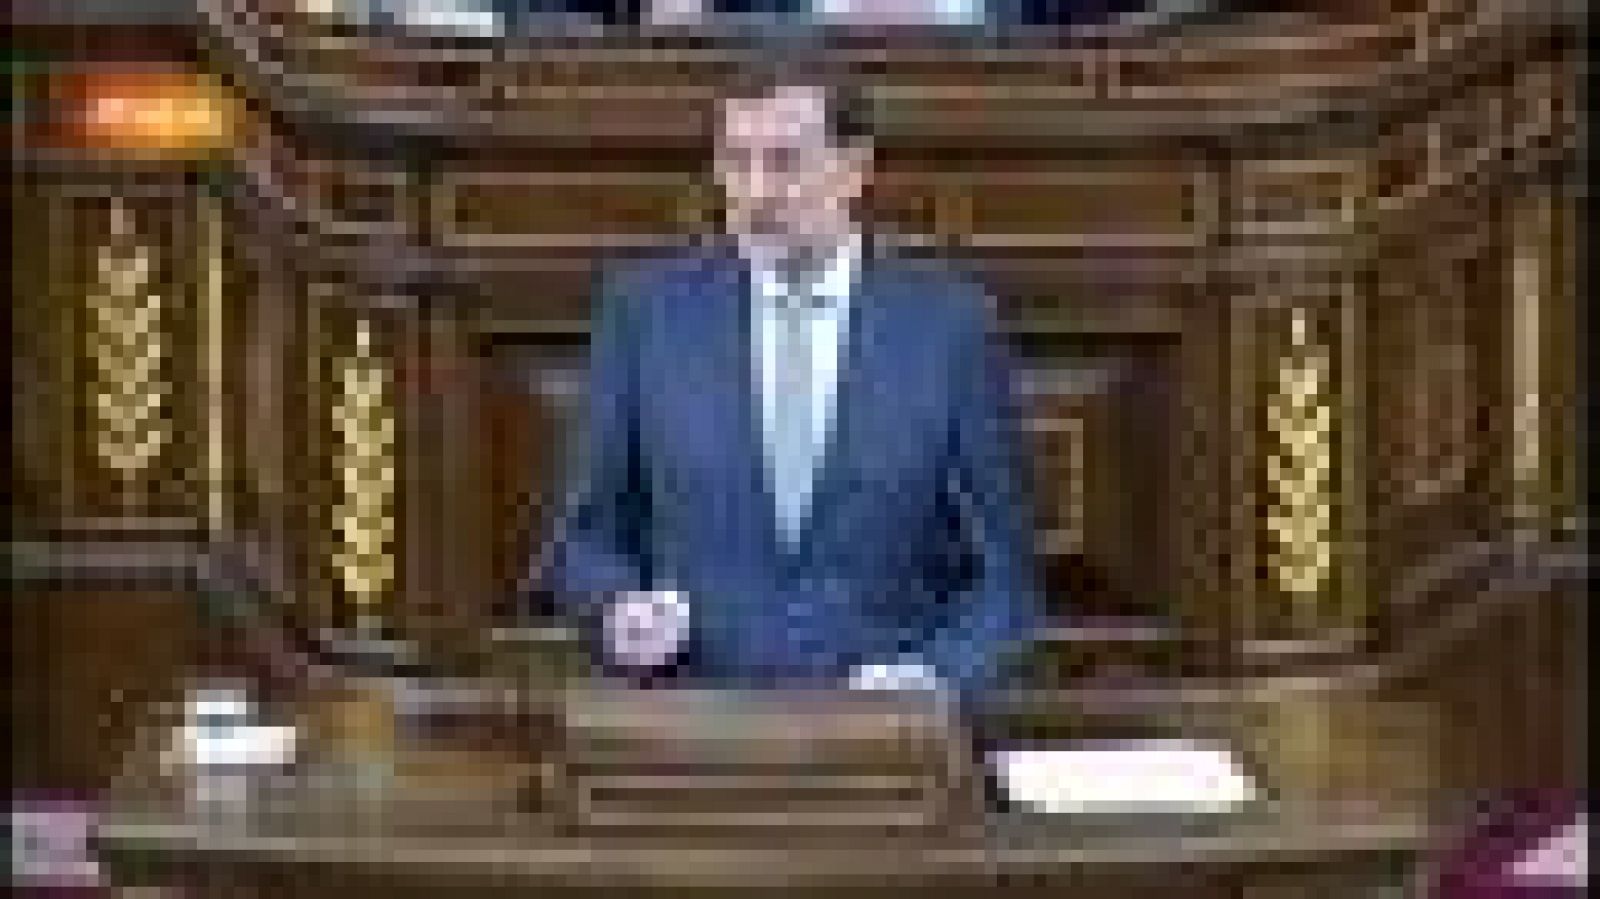 Presidente del Gobierno, Mariano Rajoy, ha anunciado un paquete de medidas adicionales en el Congreso que conllevan más recortes. Rajoy ha dicho ante todos los diputados, que en la actual situación económica "es imposible crear empleo".